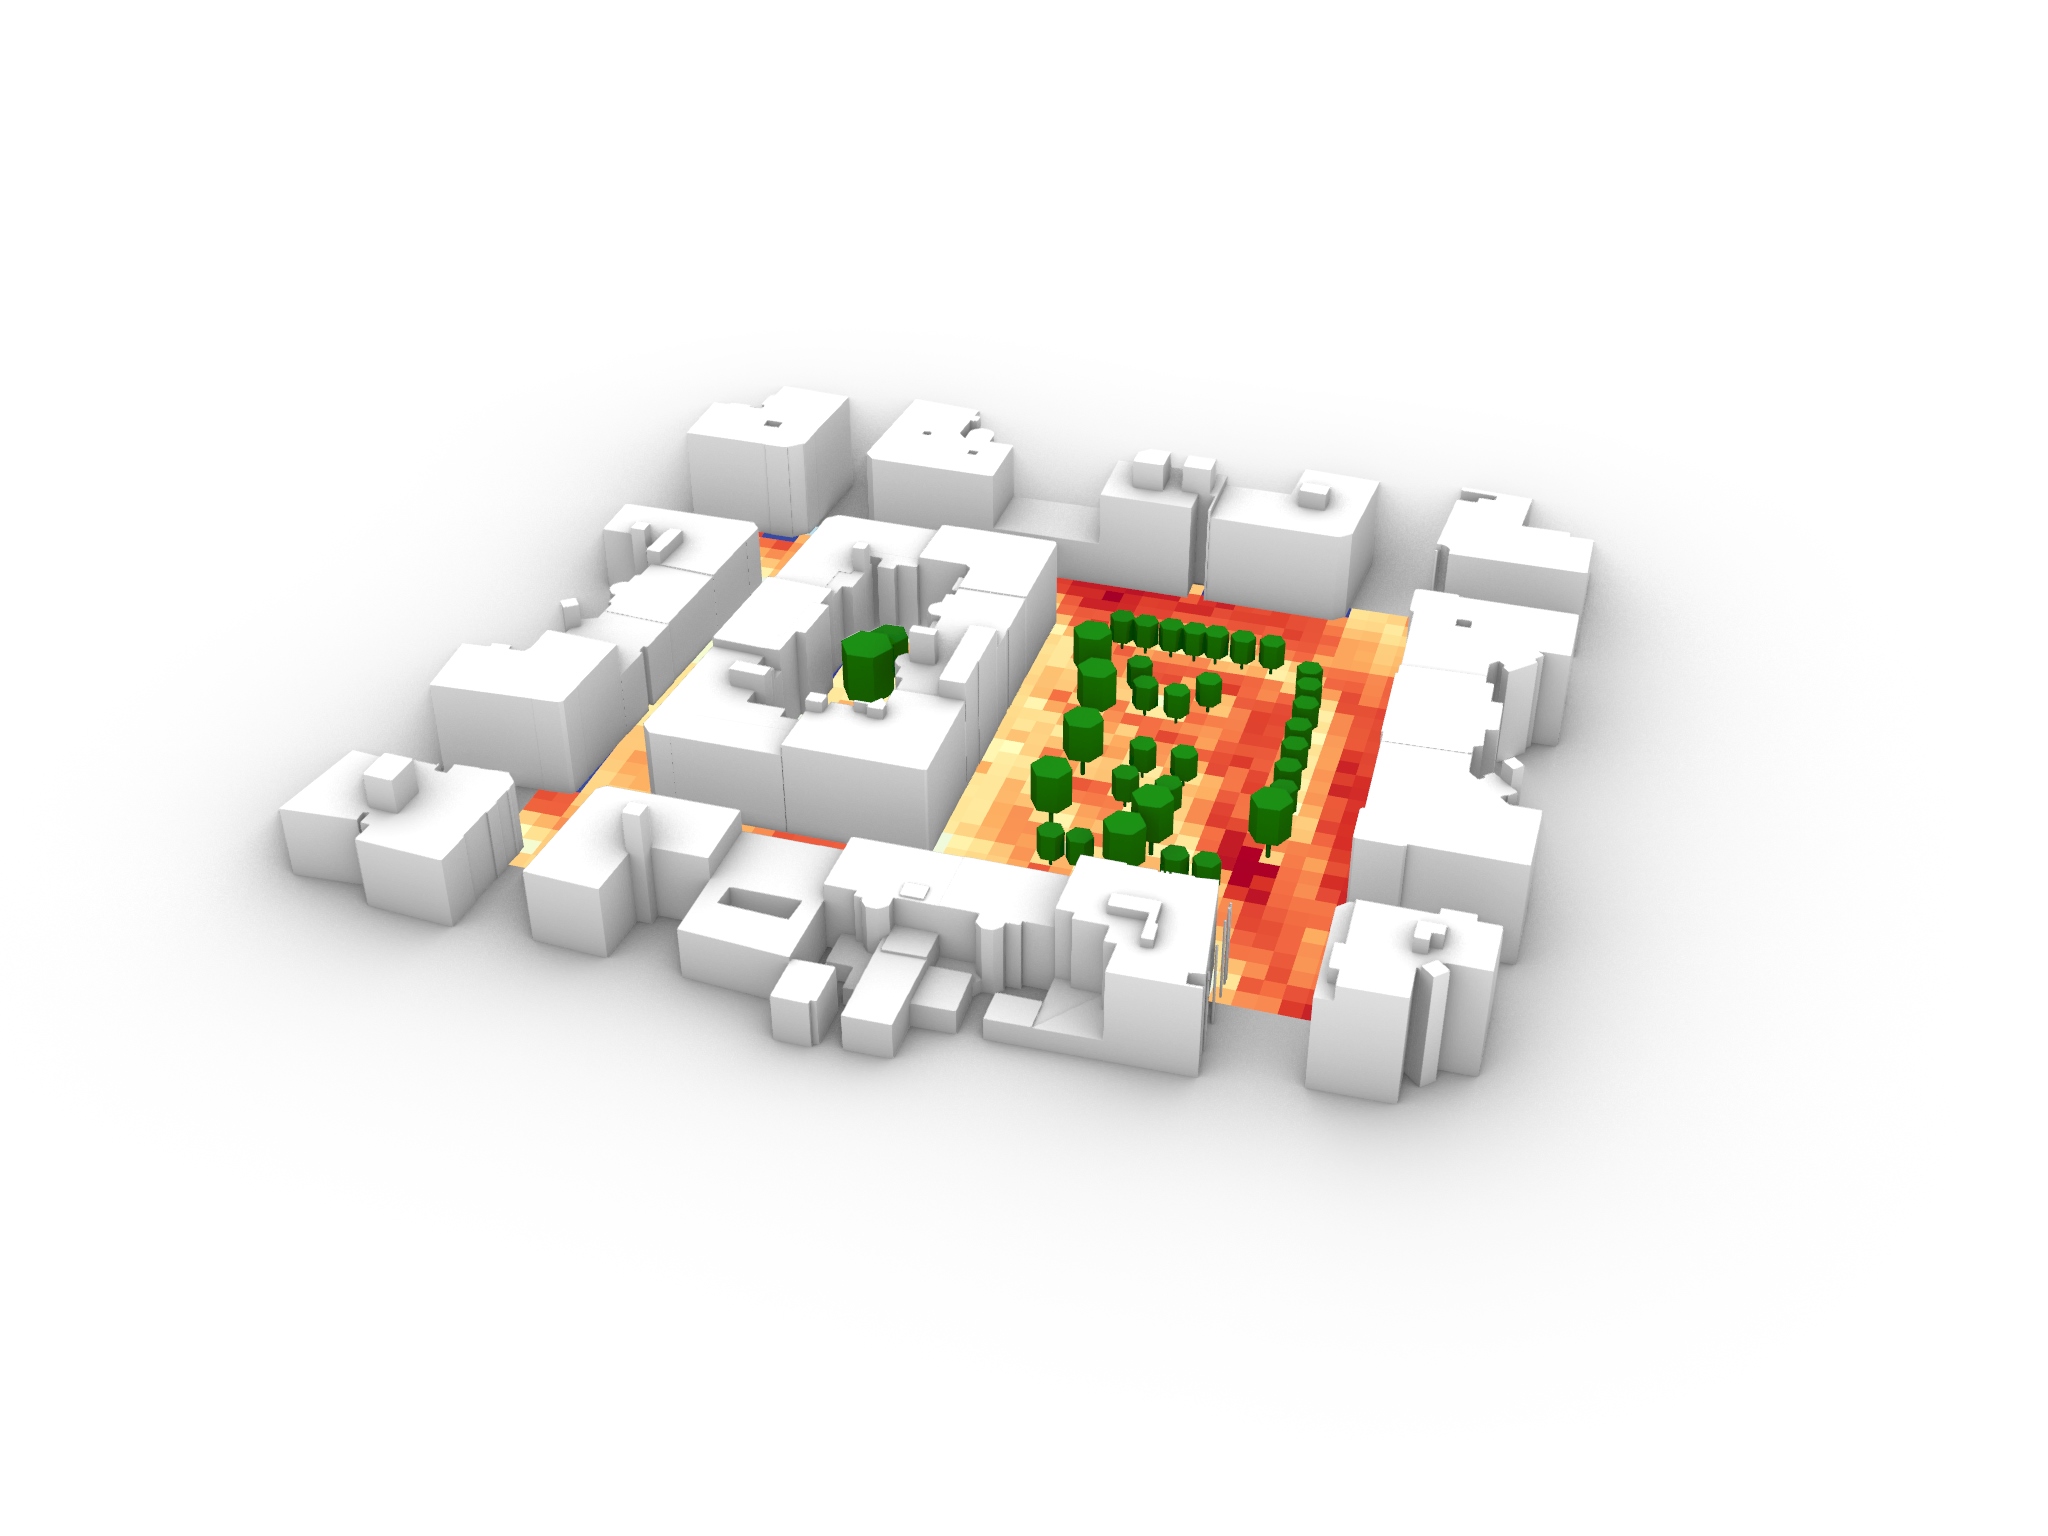 Visualisierung eines vereinfachten urbanen Bereichs, in welchem in gelben, orangen und roten Farben Hitzeinseln dargestellt sind.